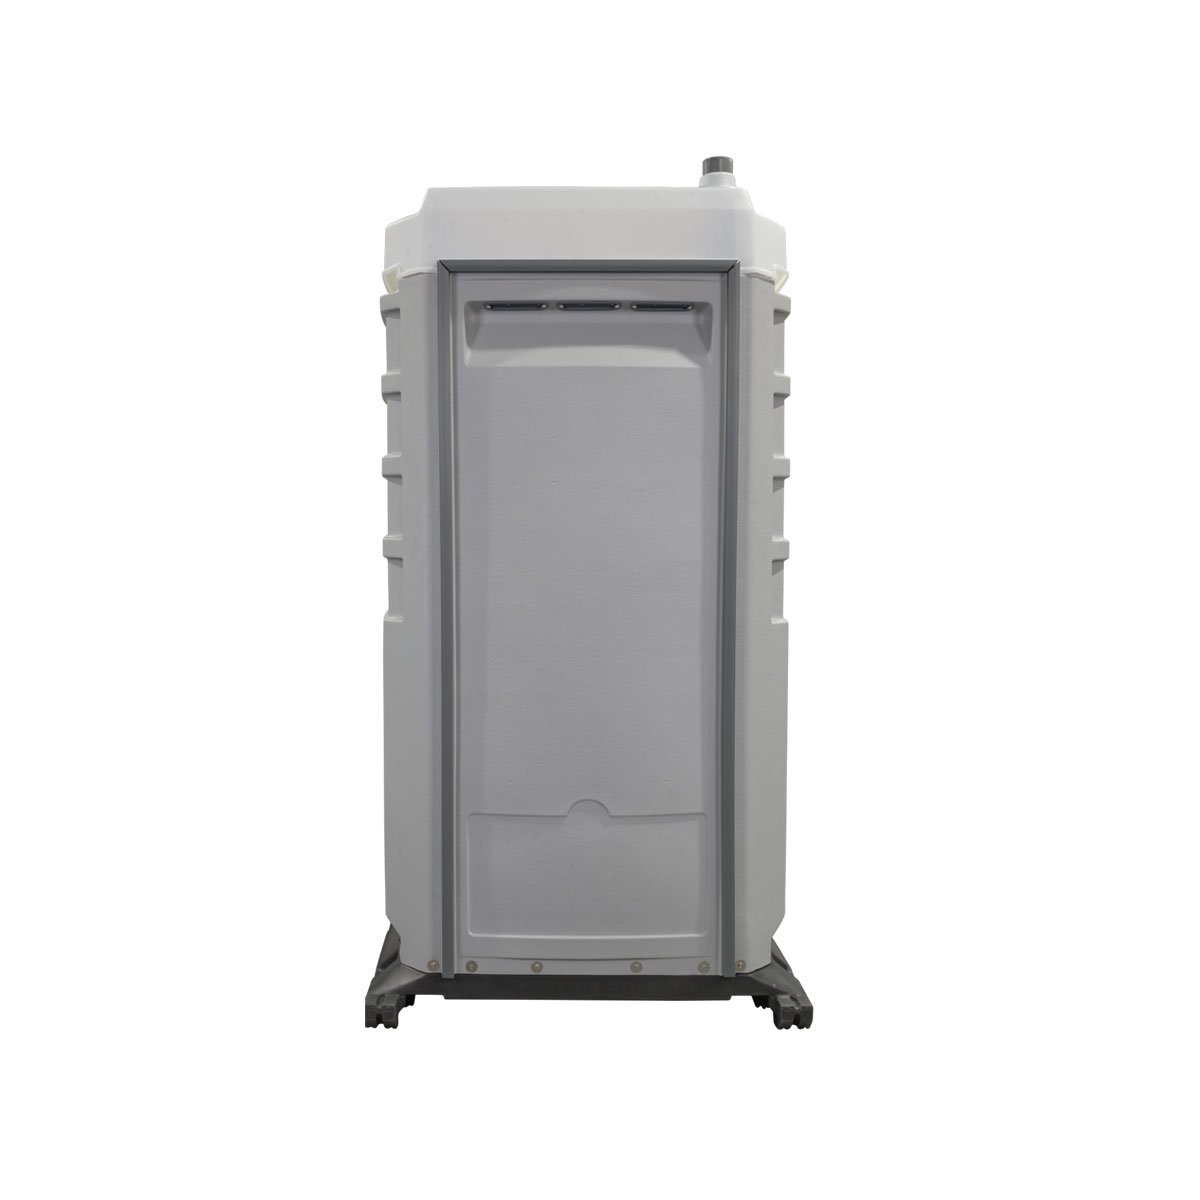 event-unit-portable-toilet-3.jpg